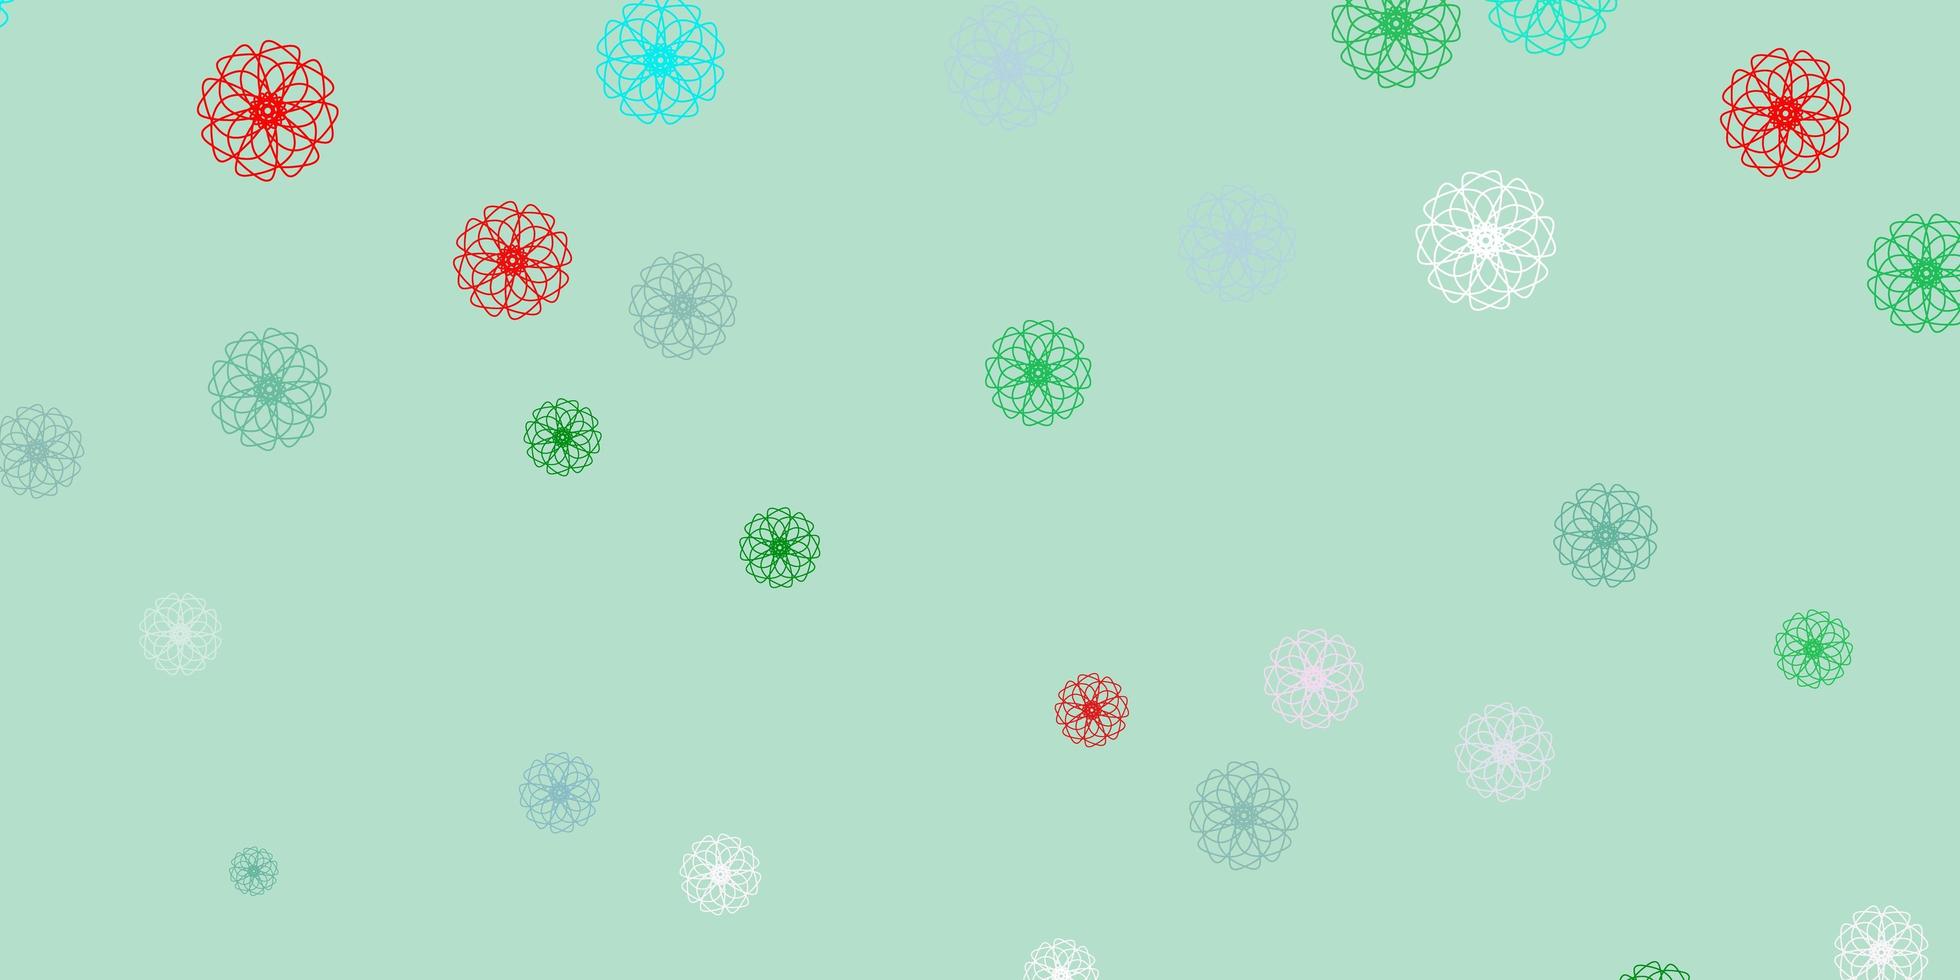 motif de doodle vecteur vert clair, rouge avec des fleurs.